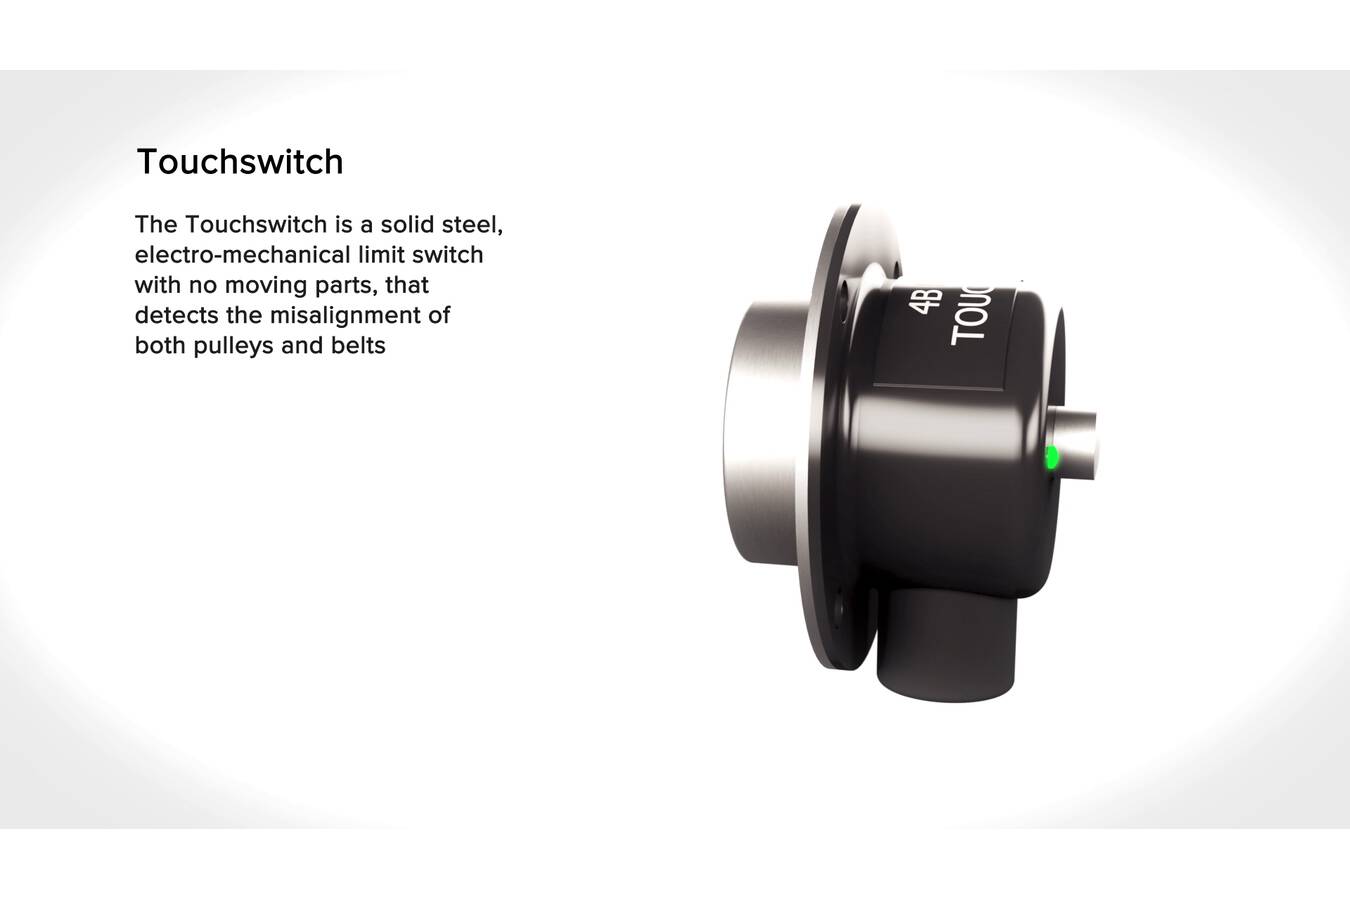 TOUCHSWITCH Gurtschieflaufsensor für Elevatoren / Förderer Der TouchSwitch ist ein mechanischer Drucksensor ohne bewegliche Teile. Er fungiert als Schieflaufwächter bei Förderern und Elevatoren.